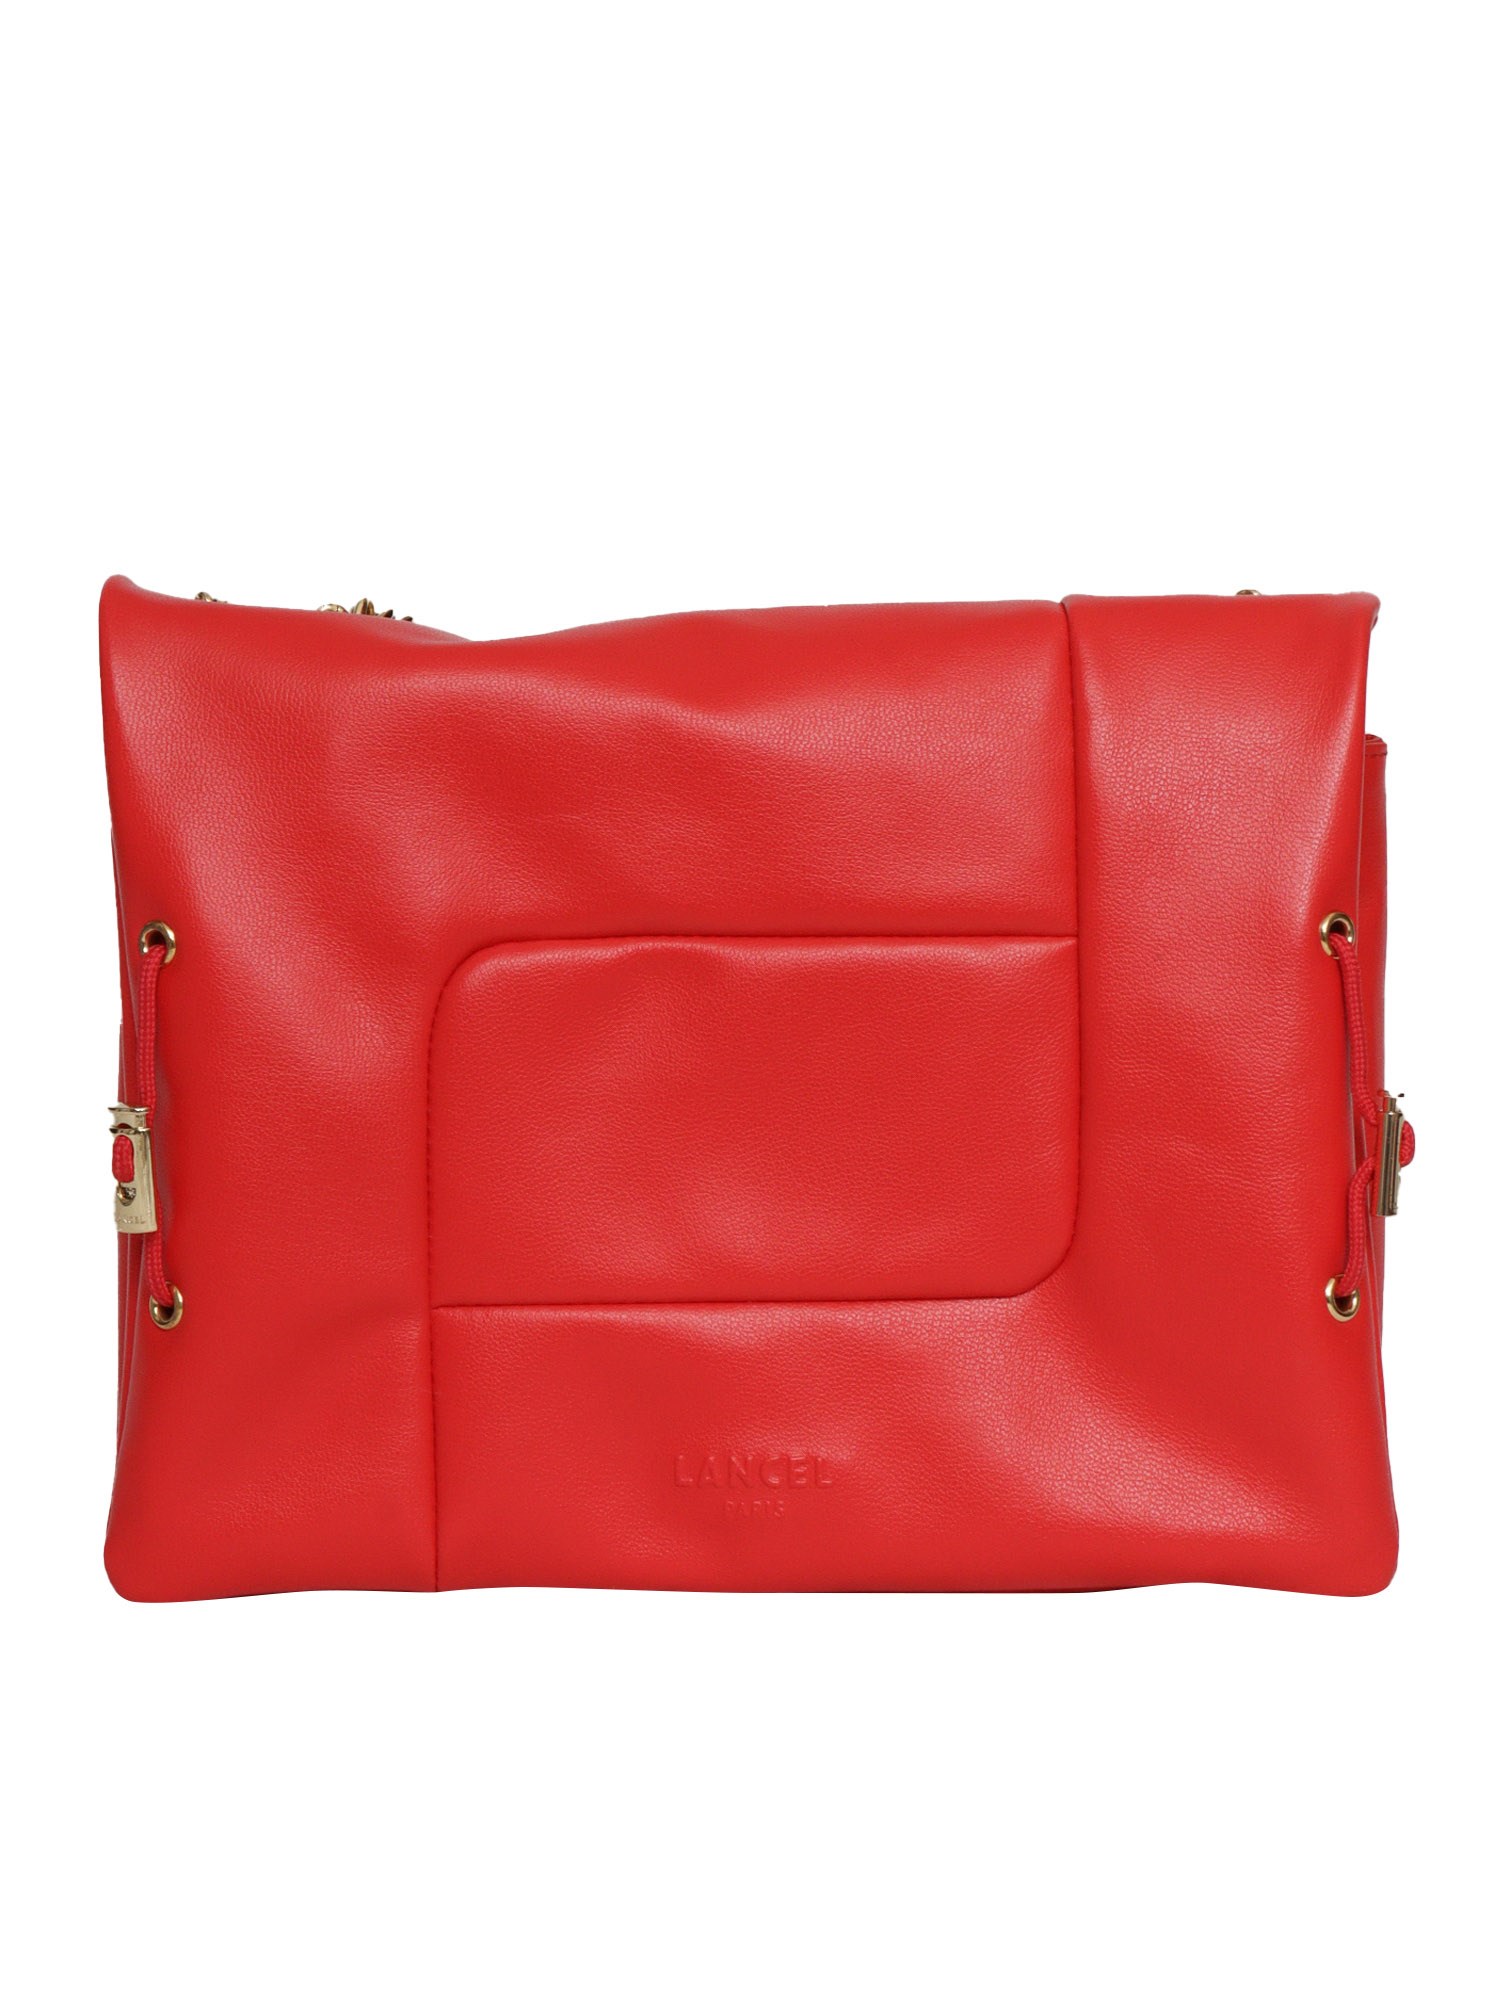 Lancel Red Rabat Bag